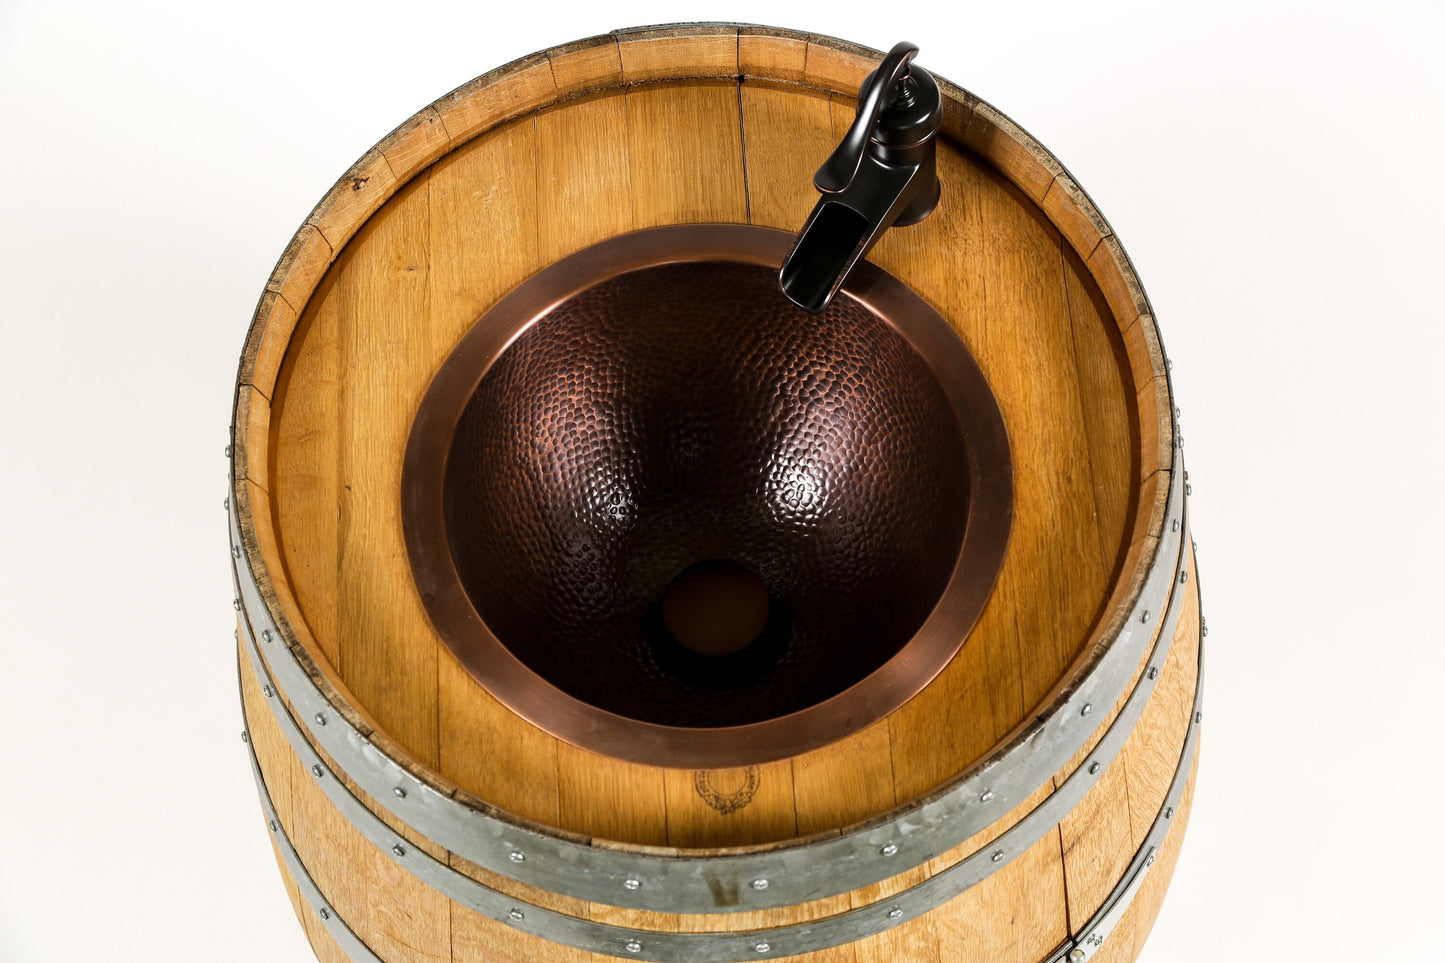 Wine Barrel vanity with hammered copper sink and faucet - Pranya - Free Standing Barrel Vanity with Door